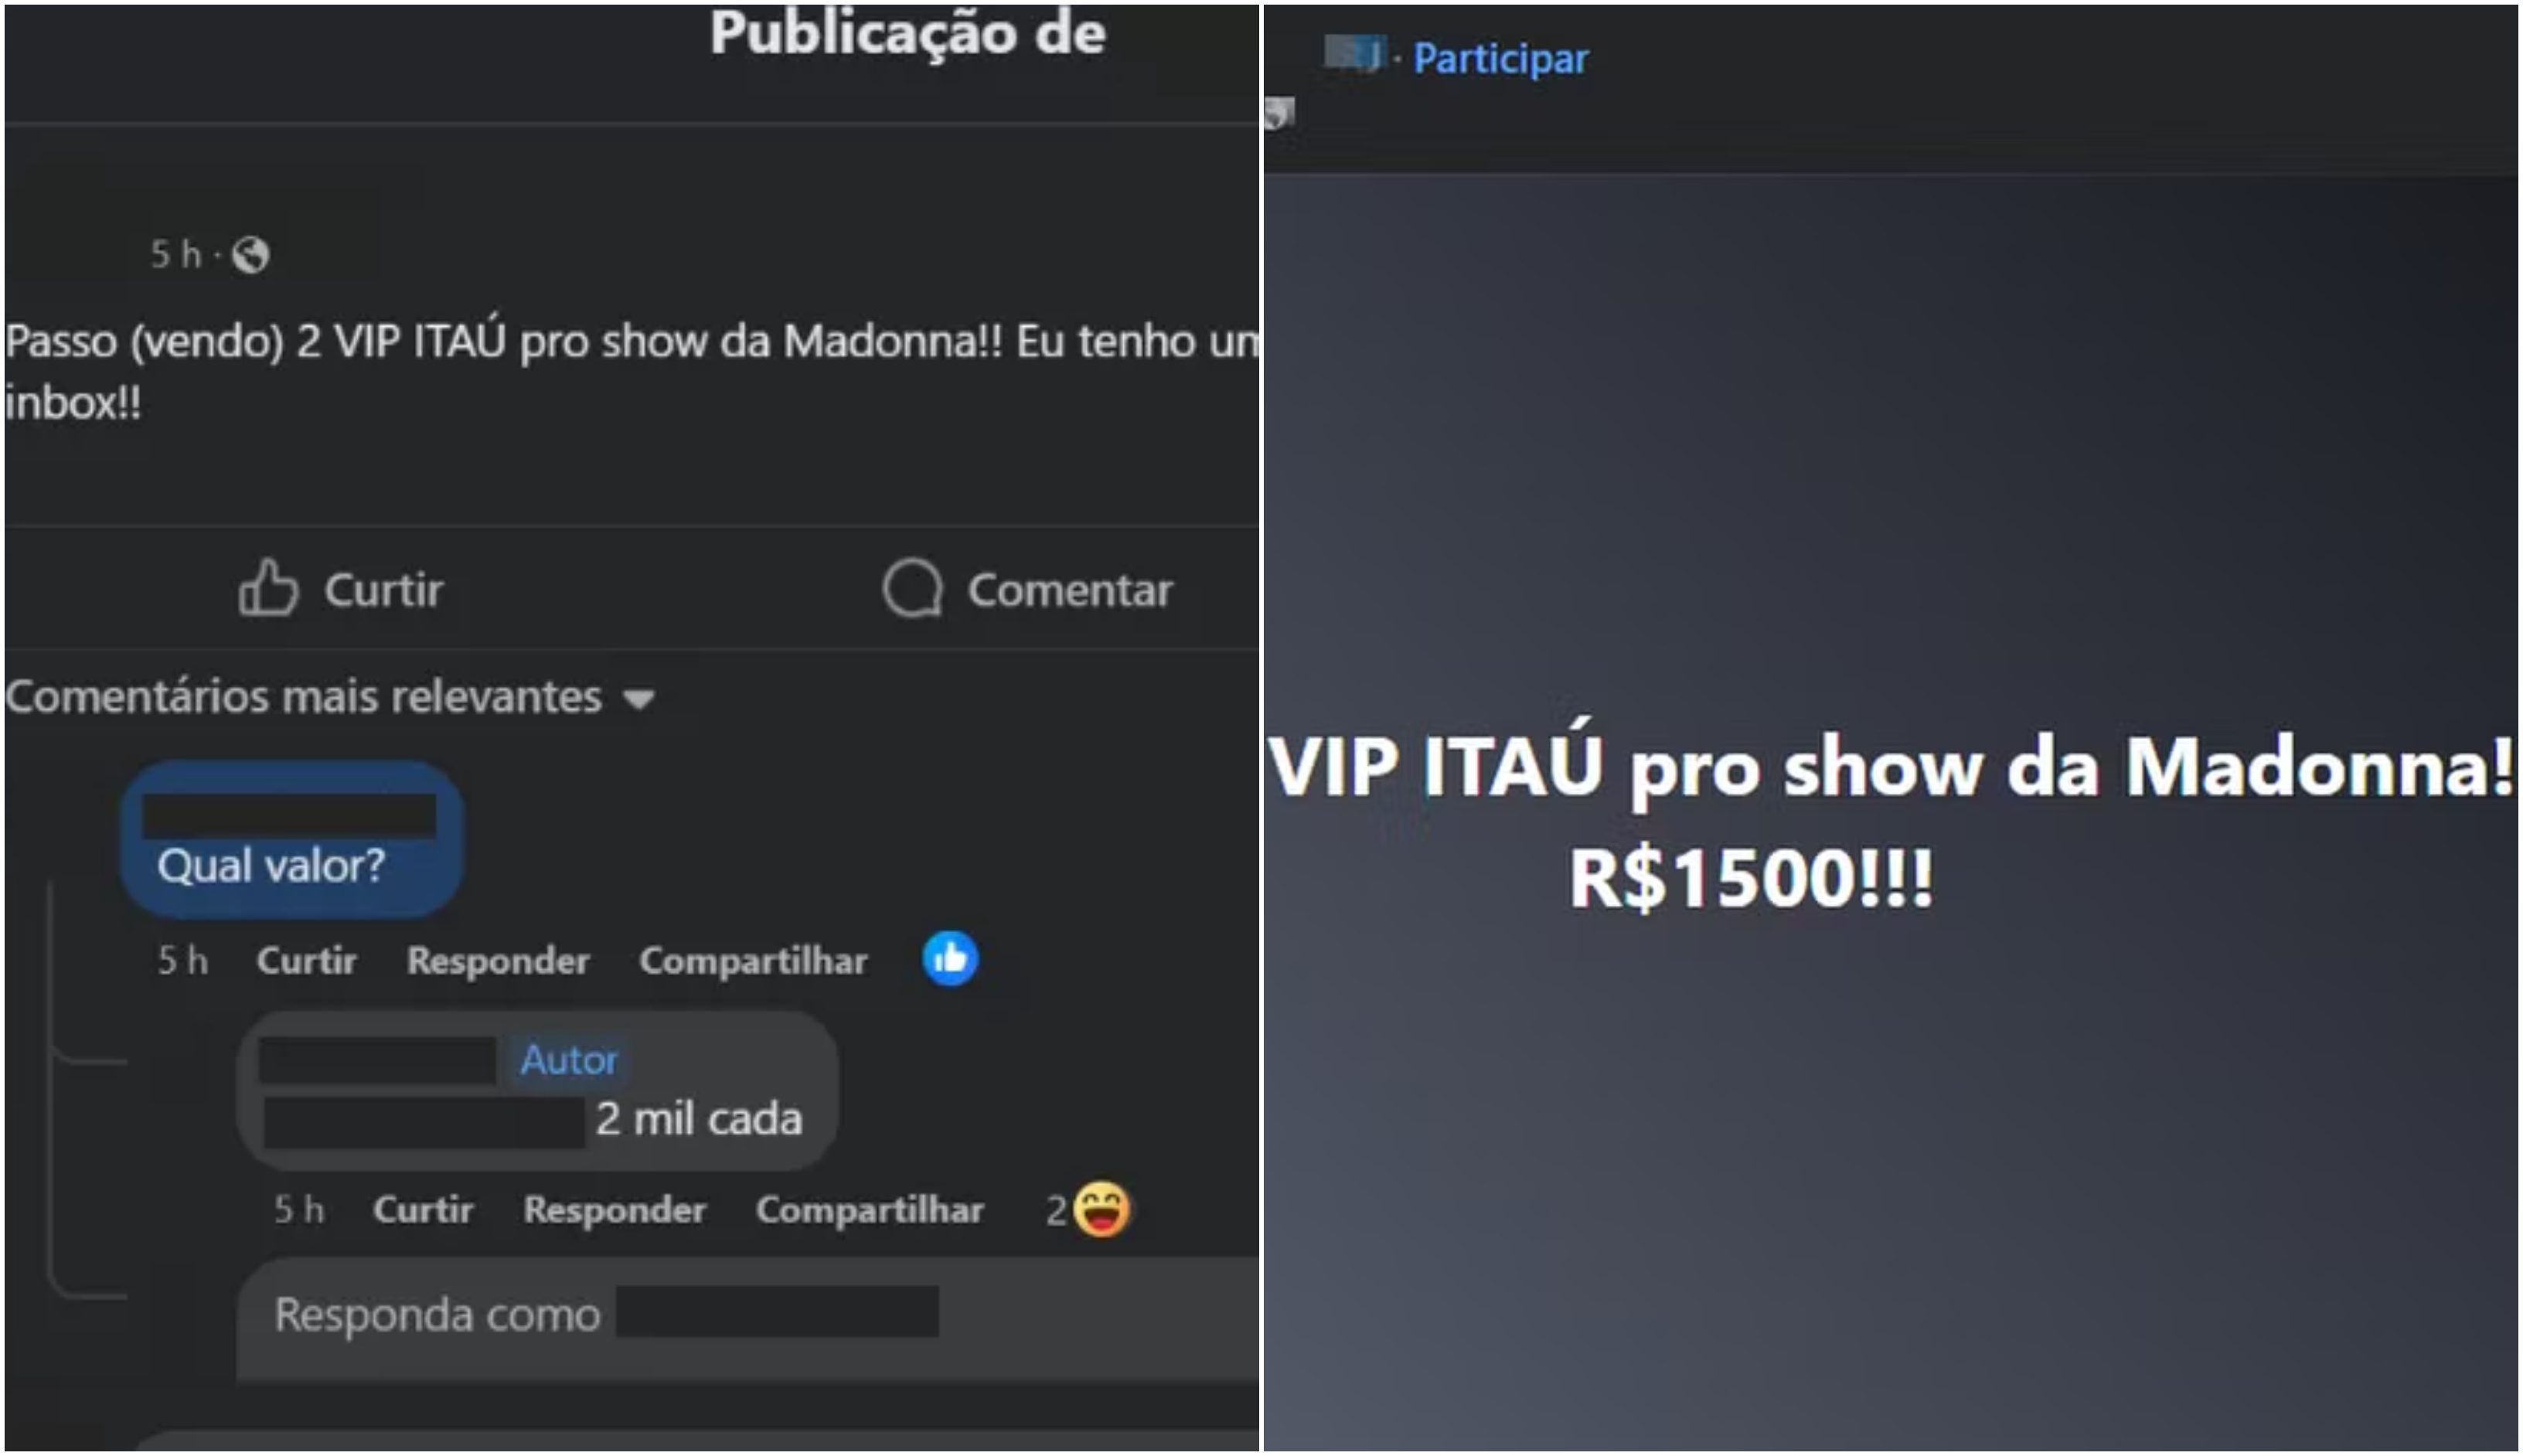 Golpistas anunciam ingressos falsos para show da Madonna em Copacabana 